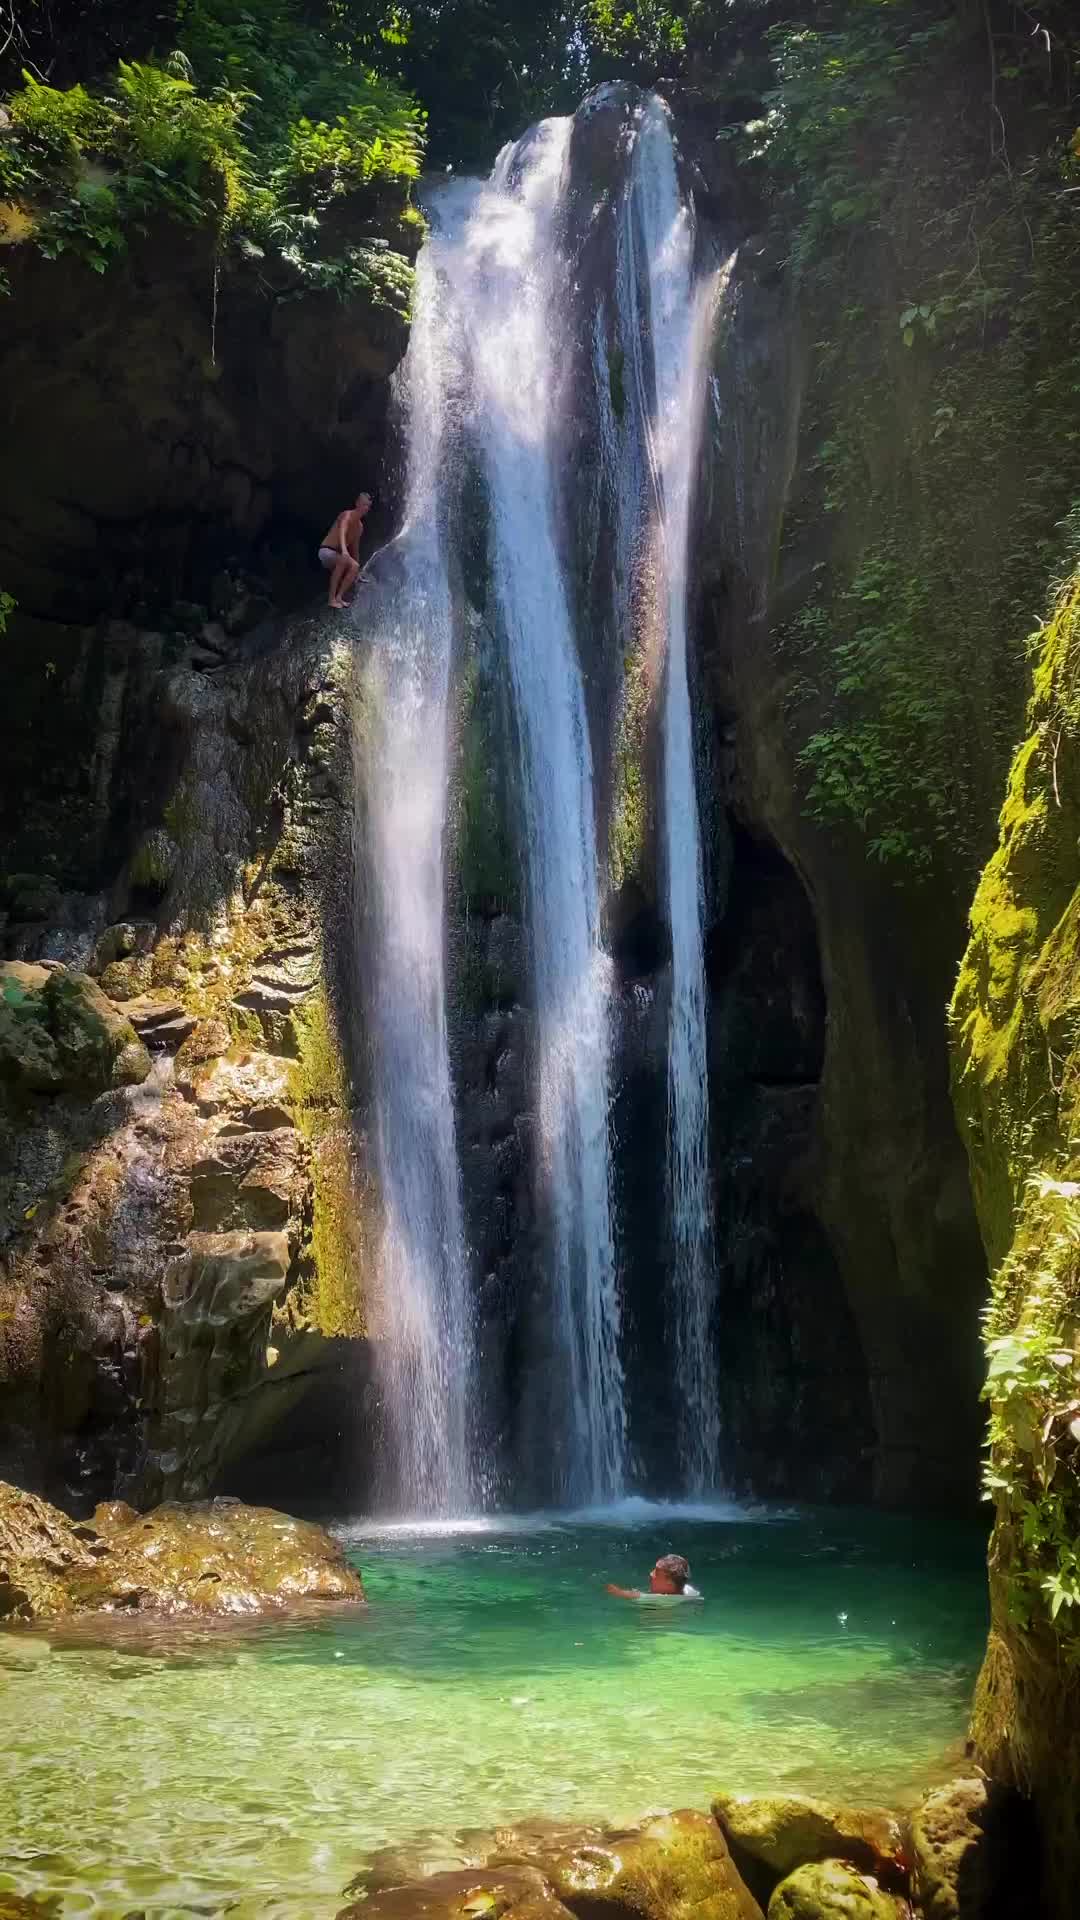 Thrilling Cliff Jump at Binalayan Falls, Cebu